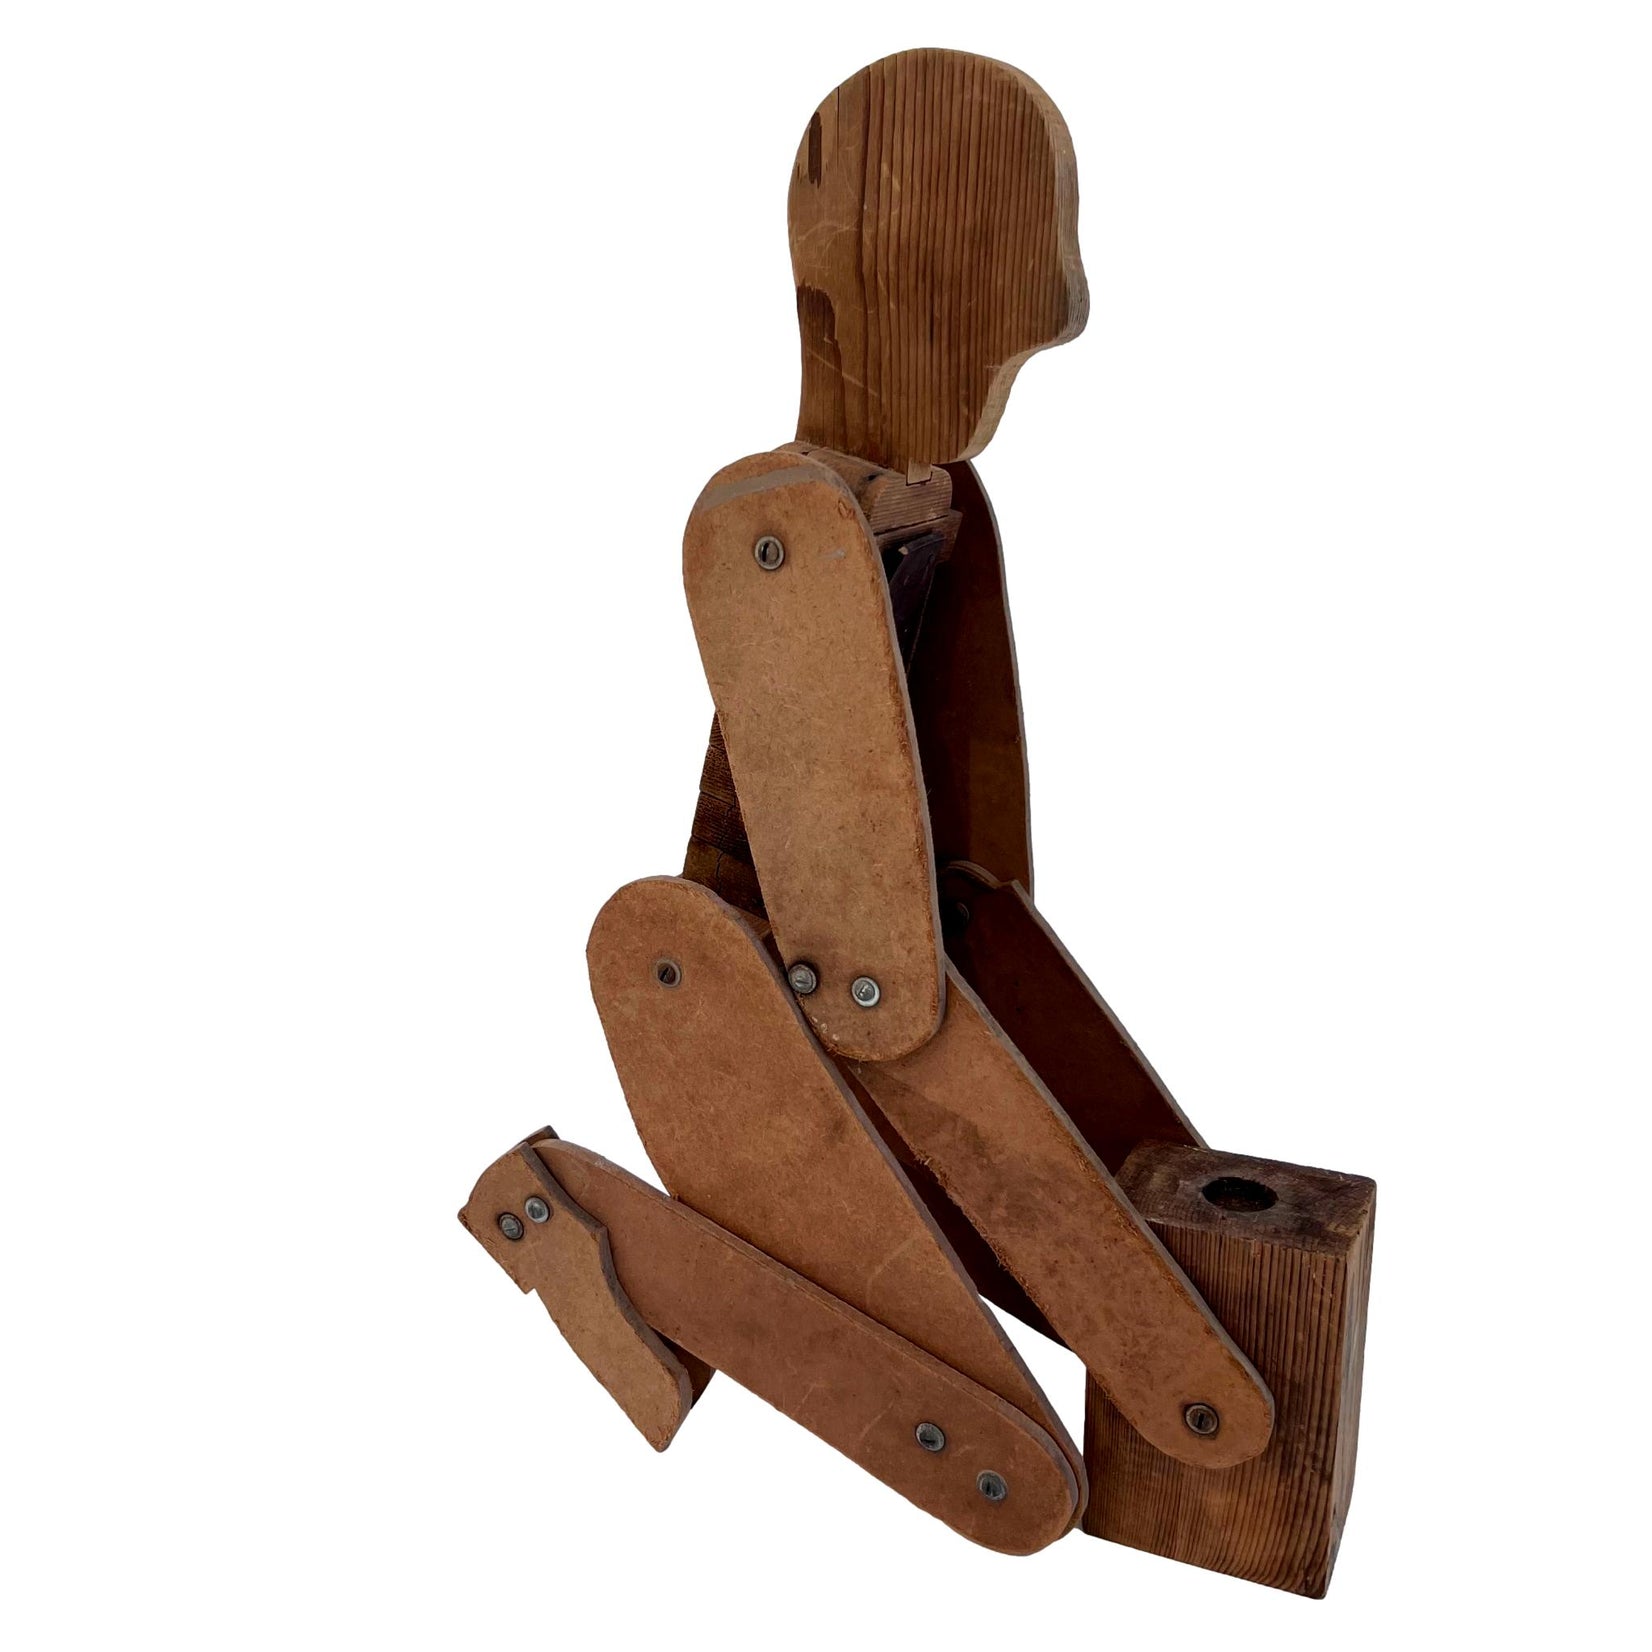 Handmade Folk Art Articulated Wooden Figure, 1950s USA